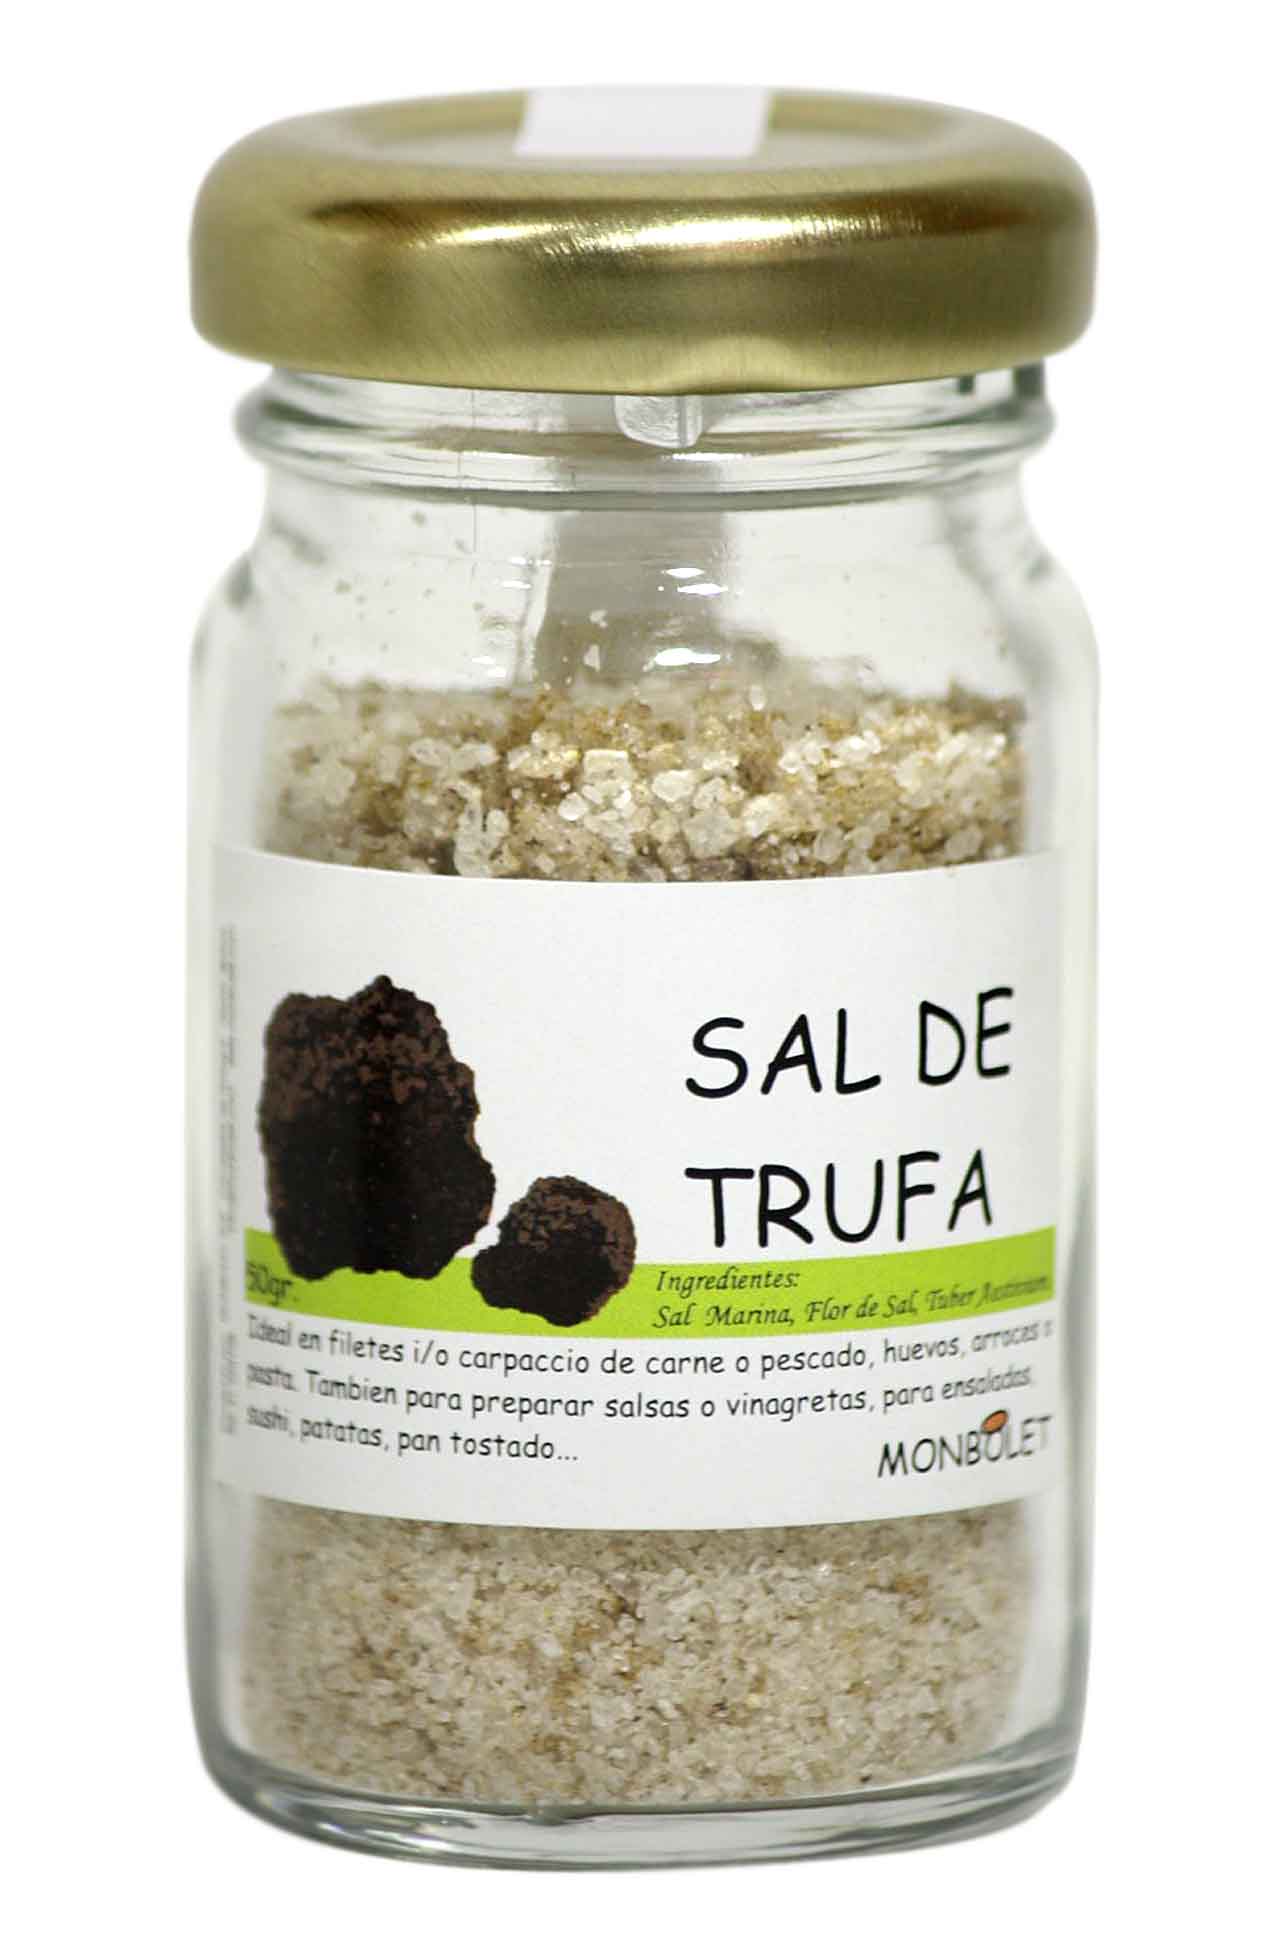 Salt with truffle